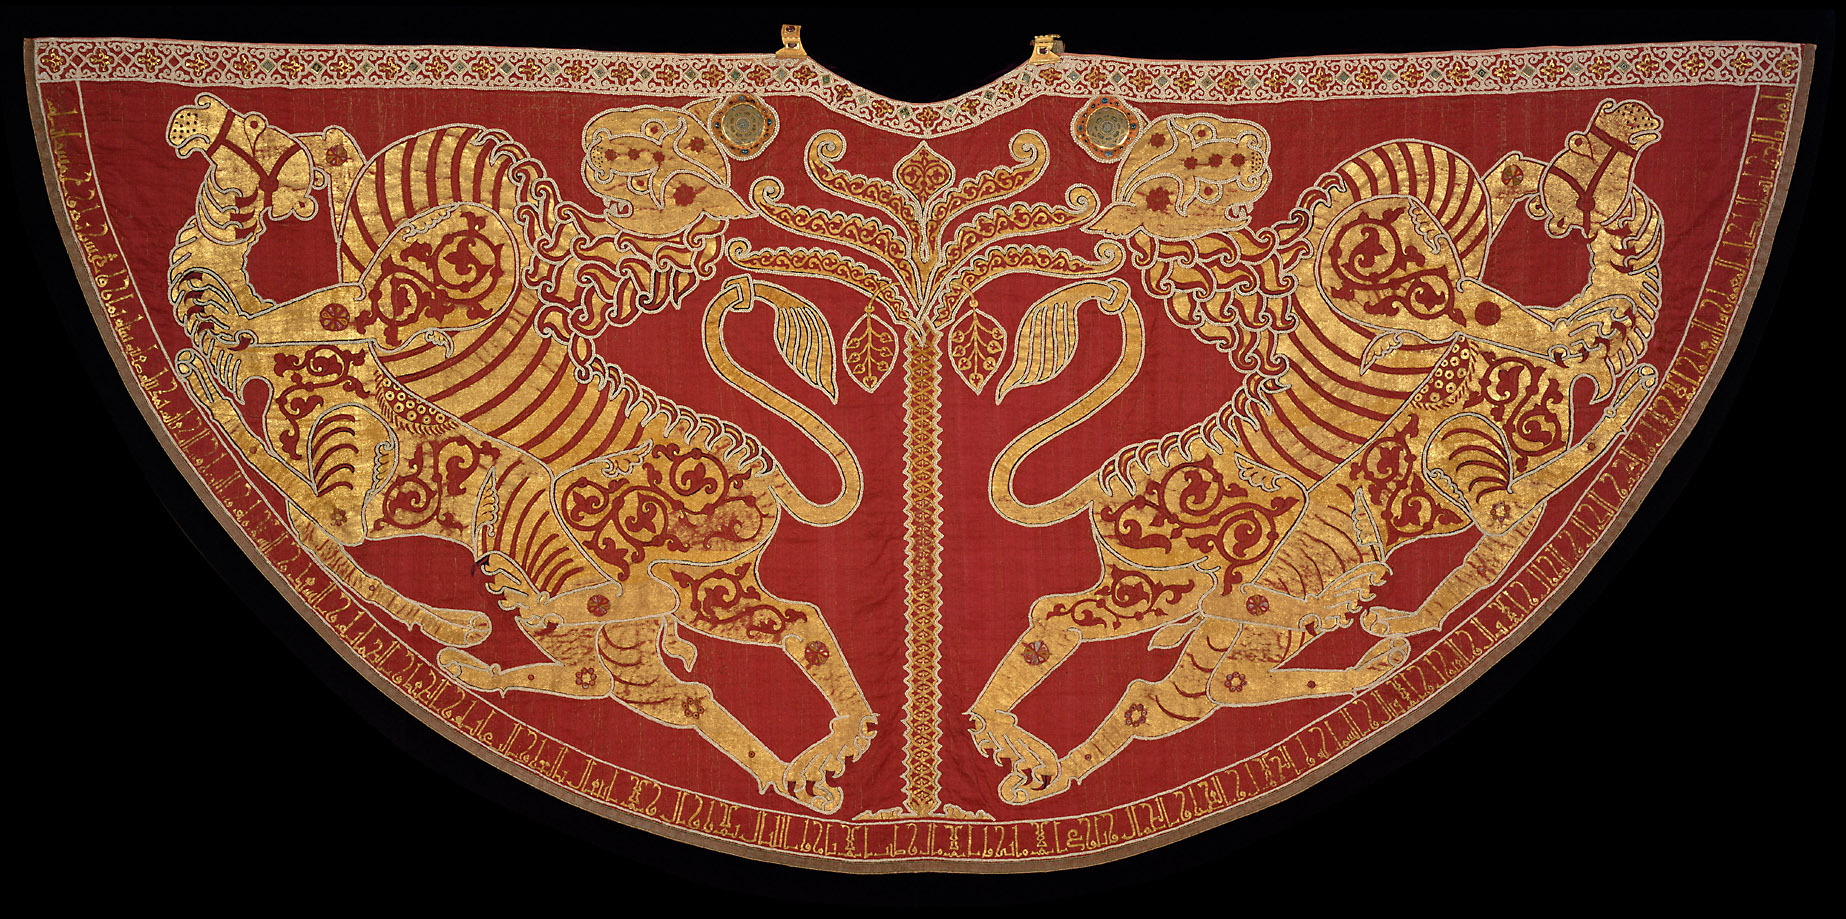 Coronation mantle of Sicily kings